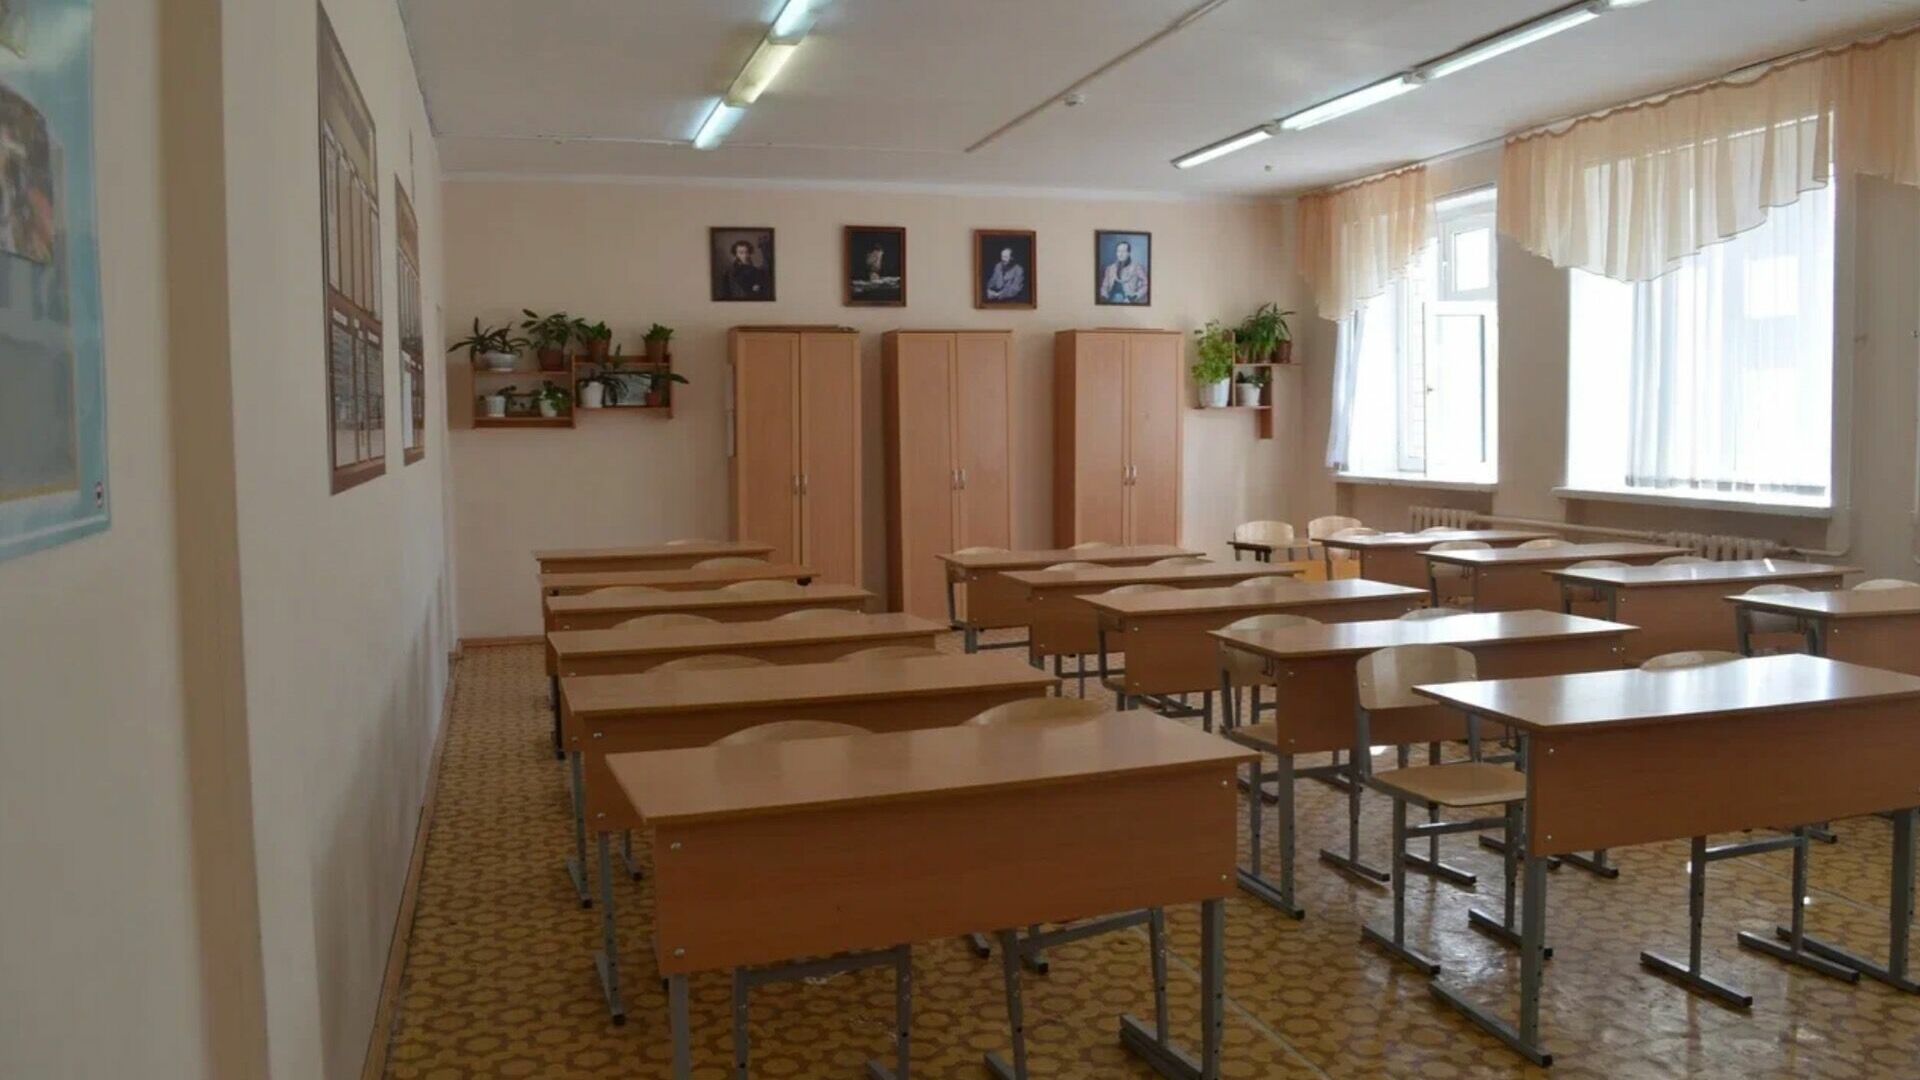 Учителя скандальной школы под Челнами не будут увольняться